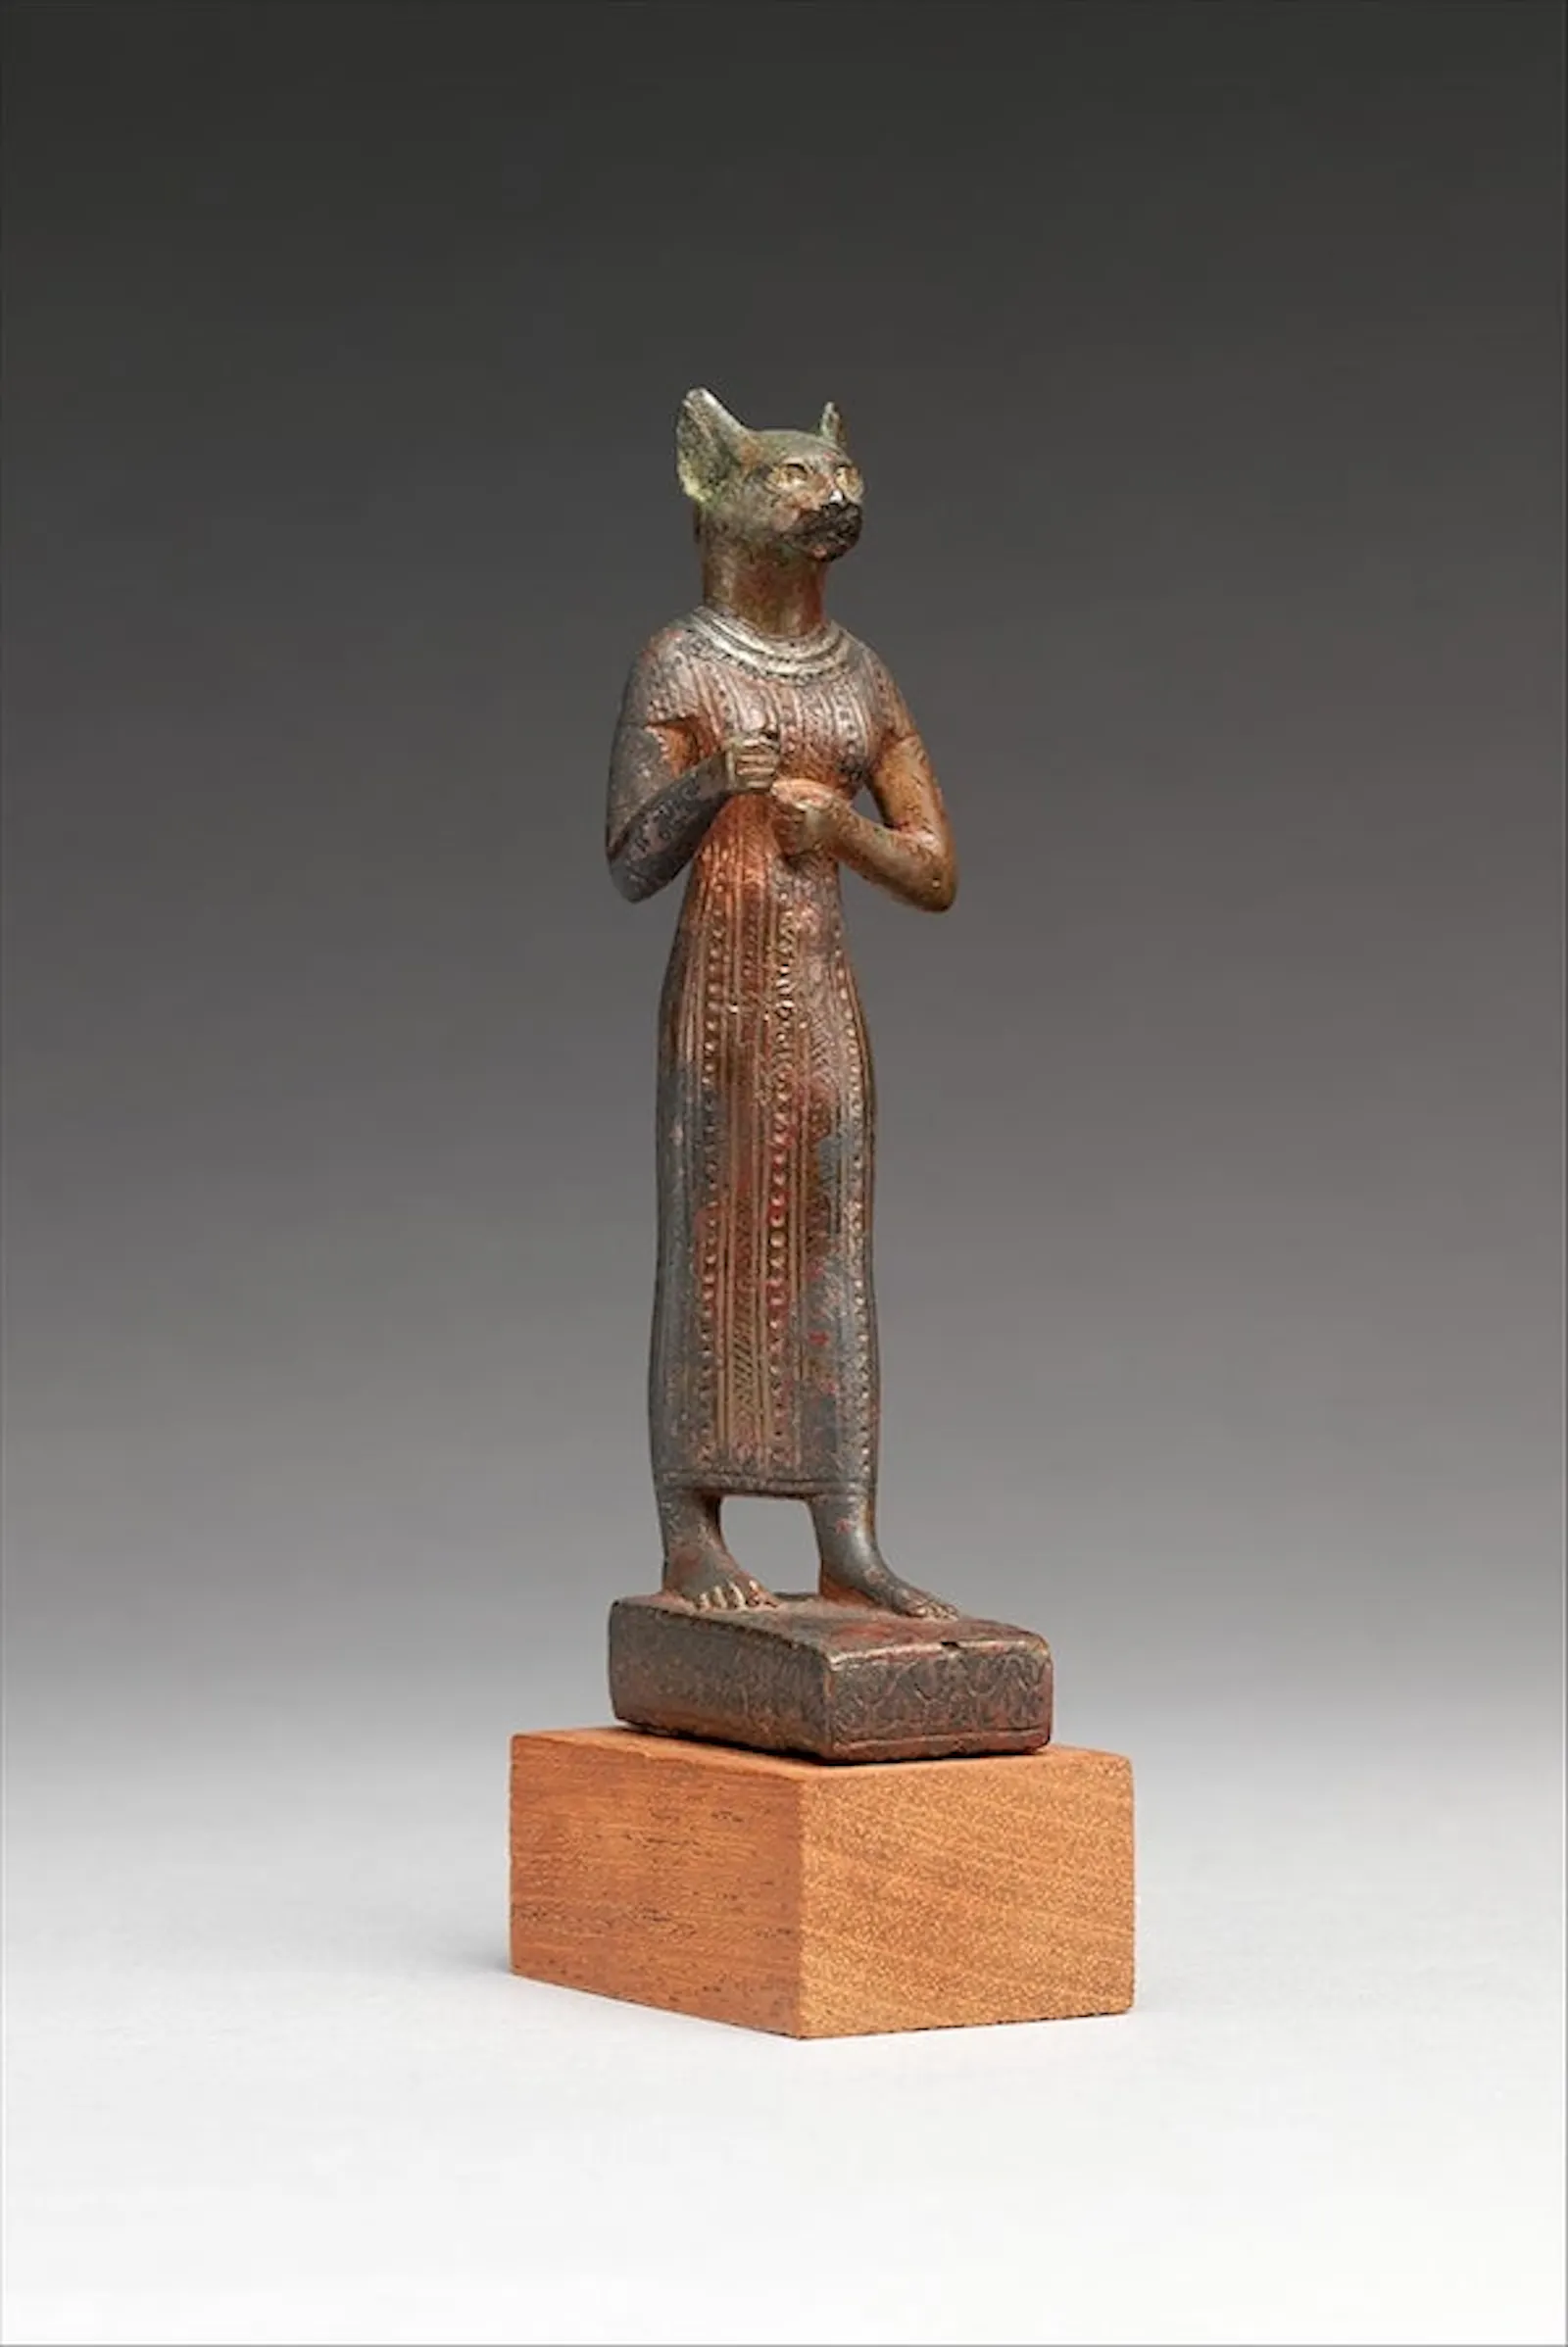 La diosa Bastet se representa con cabeza de gata y un vestido largo.